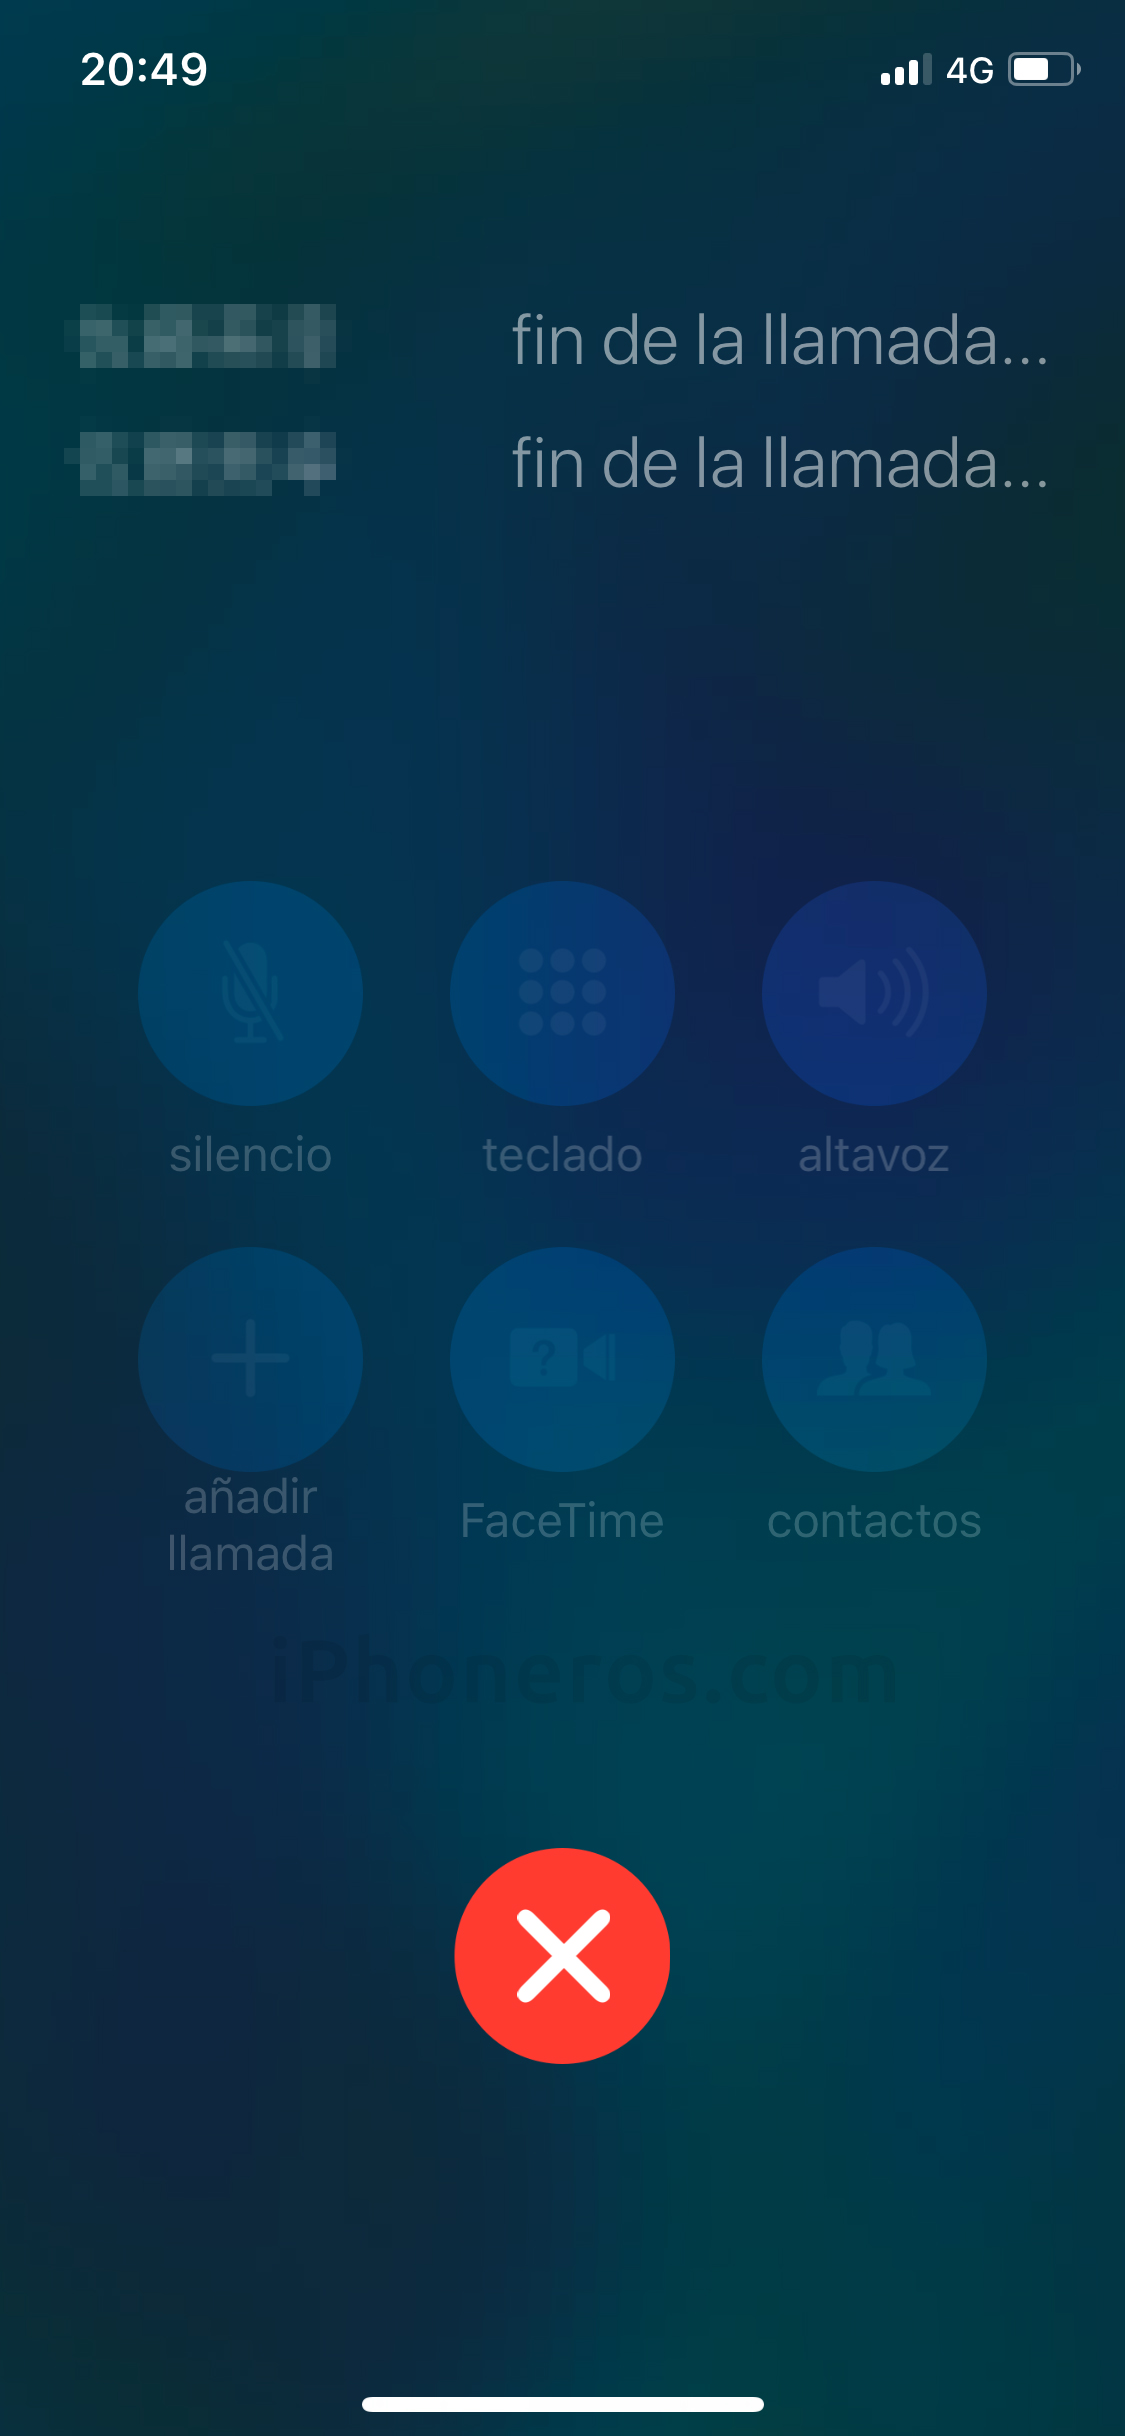 App de Teléfono colgada, no permite apagar el iPhone